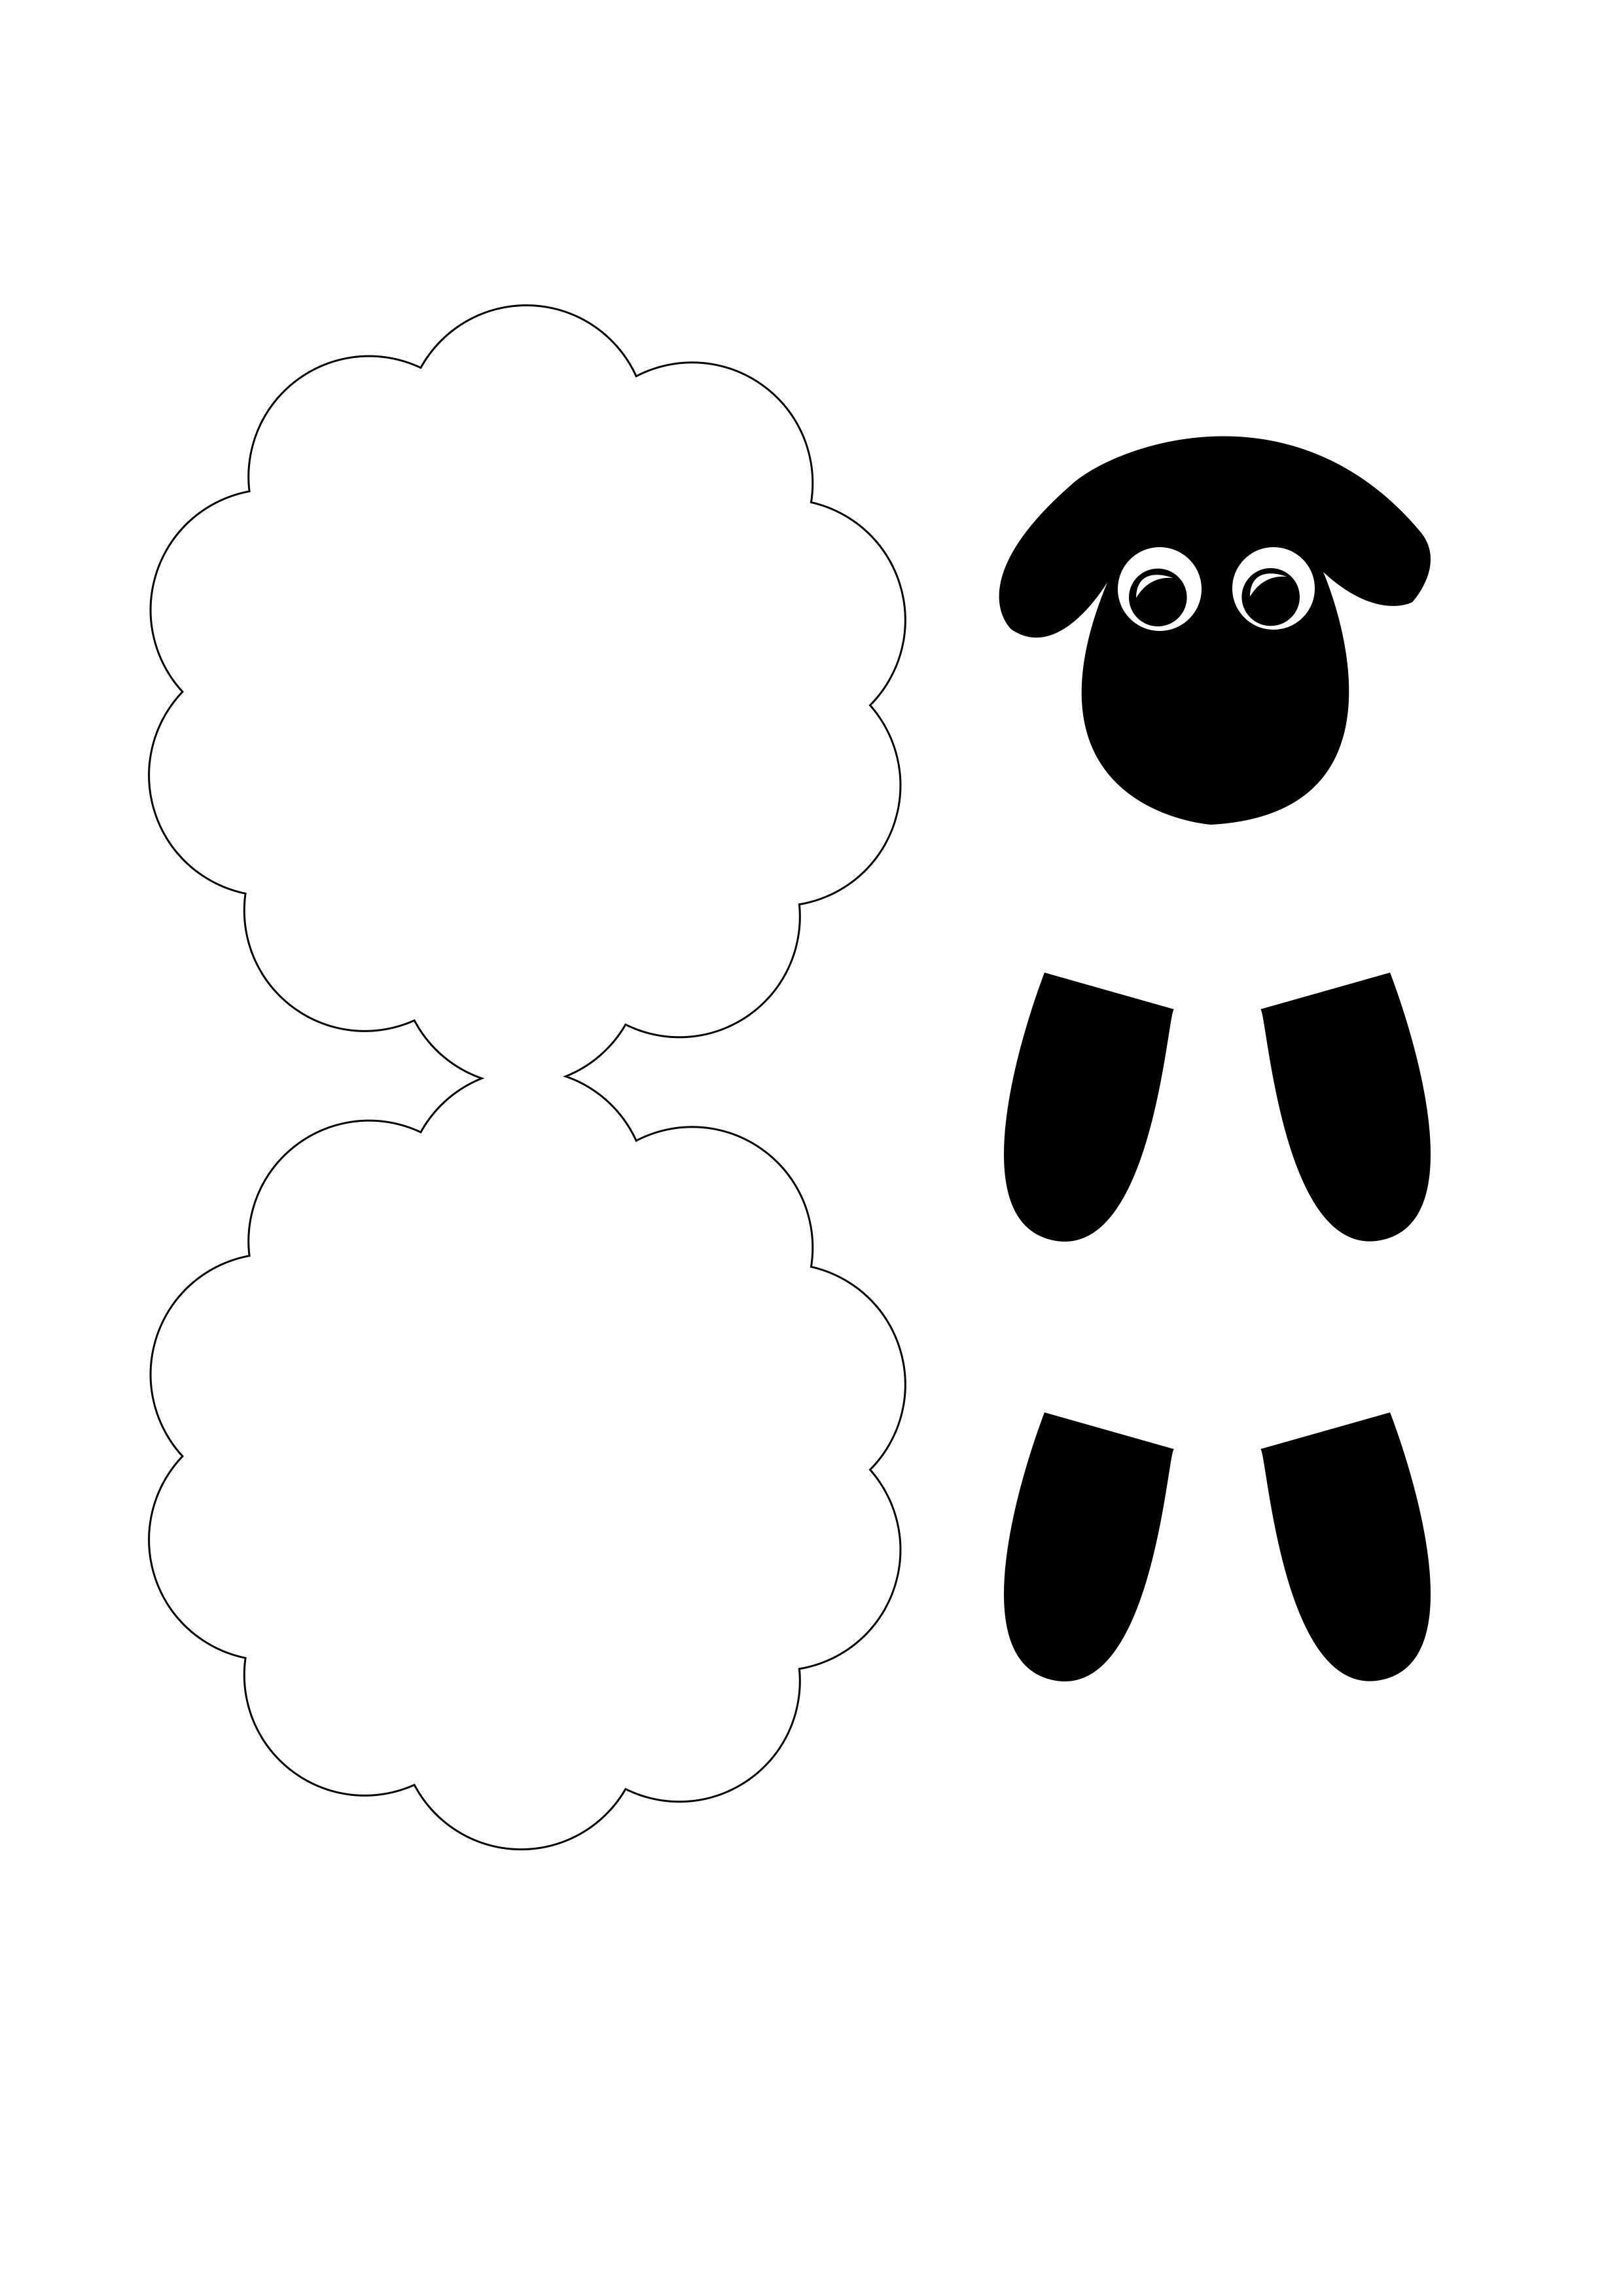 Schaf Schablone Zum Basteln Schafe Basteln Kostenlose Schablonen Schaf Kindergarten